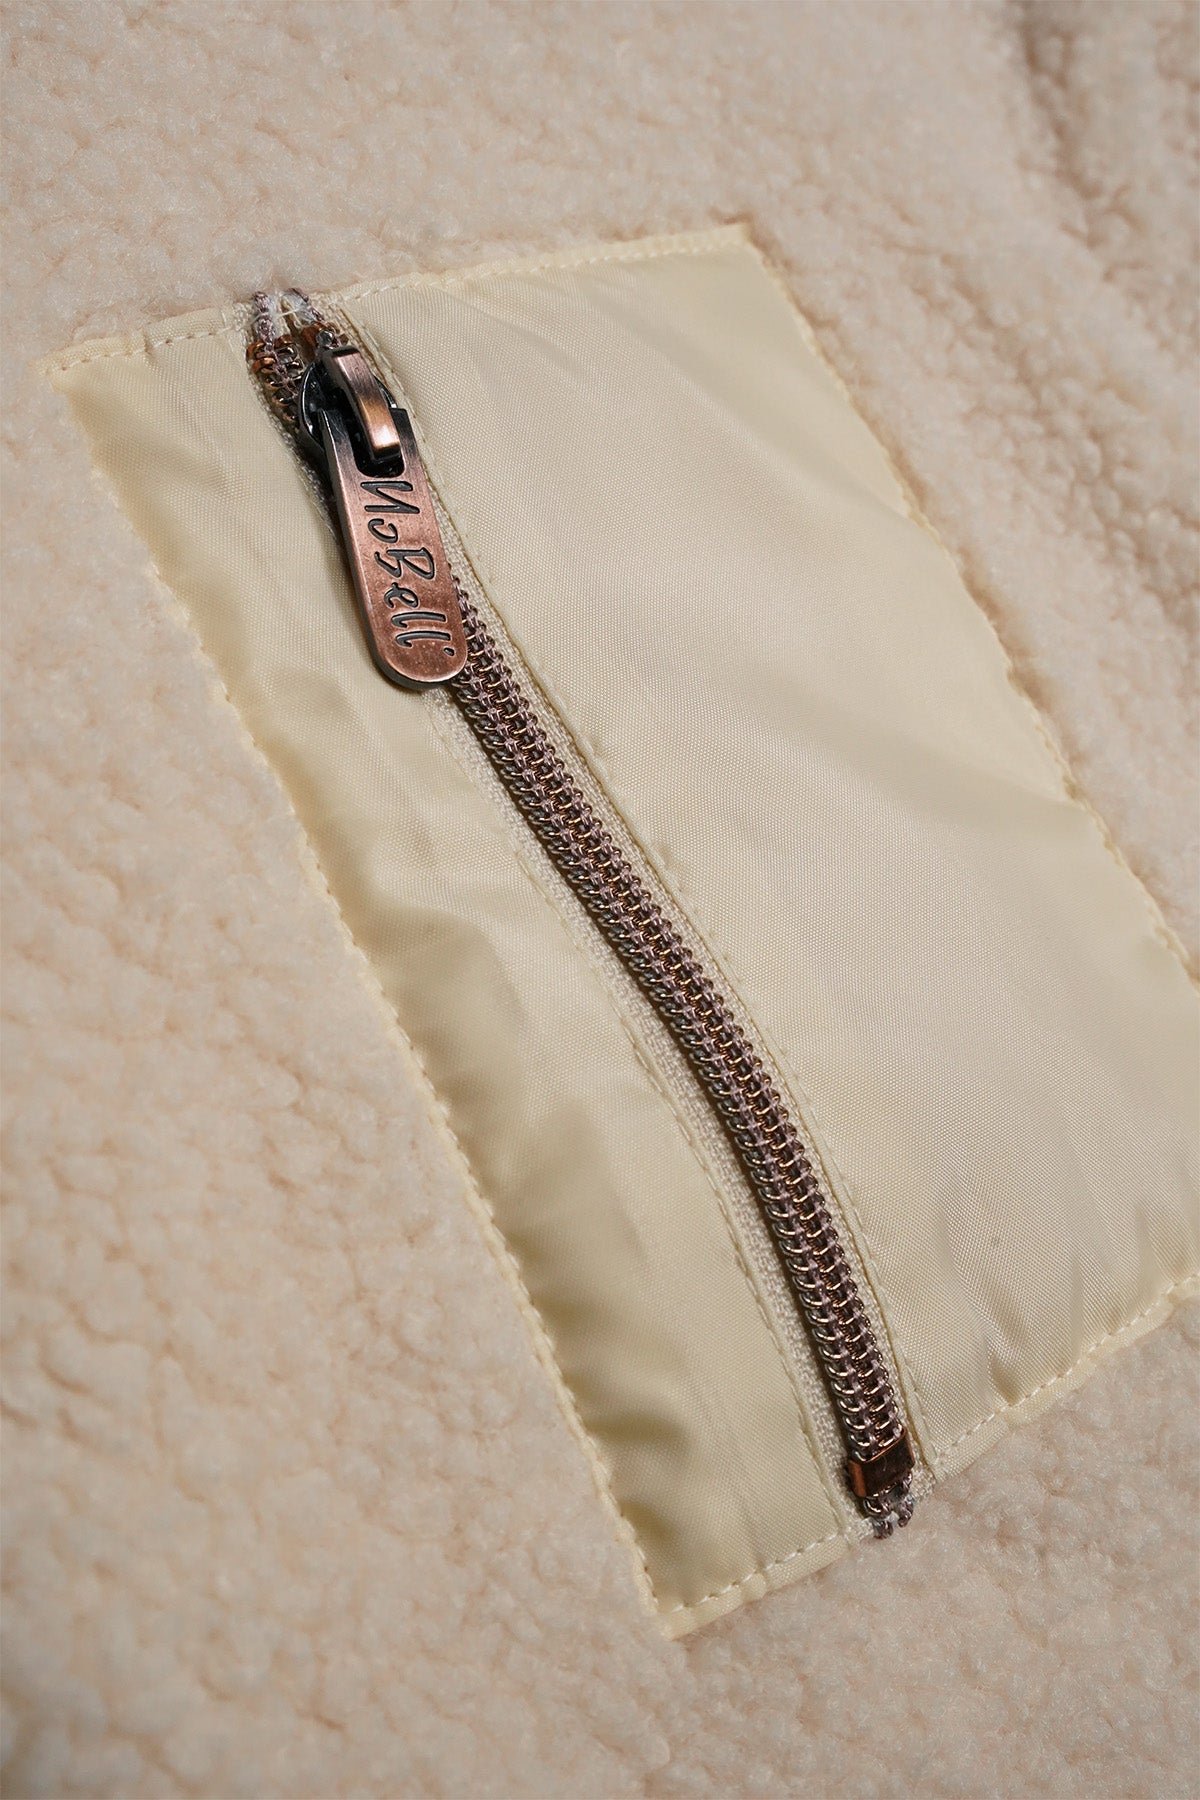 Meisjes Keddy teddy hooded zip up sweater van NoBell in de kleur Pearled Ivory in maat 170-176.